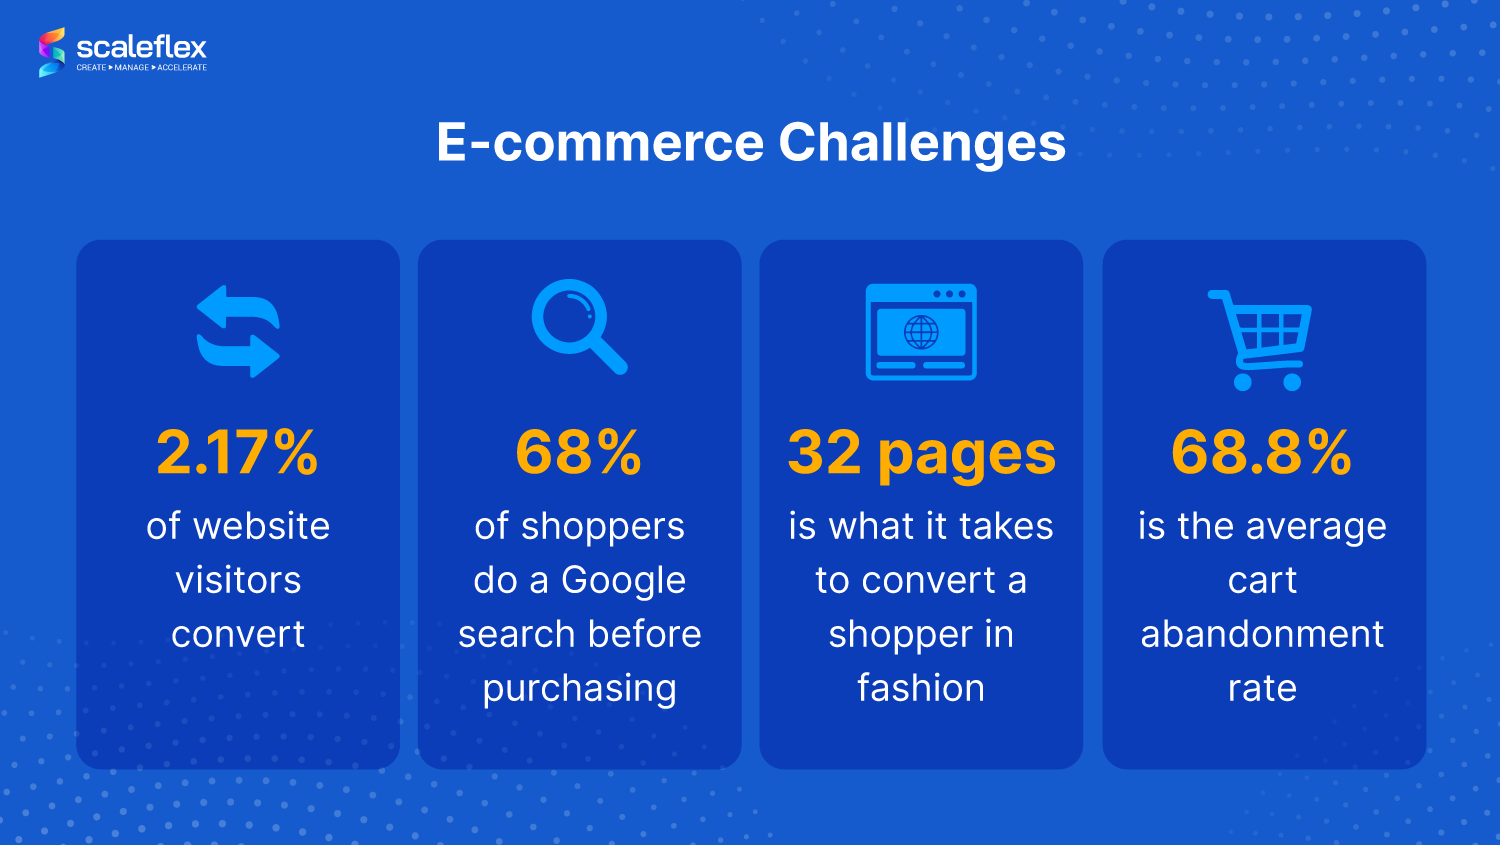 E-commerce challenges